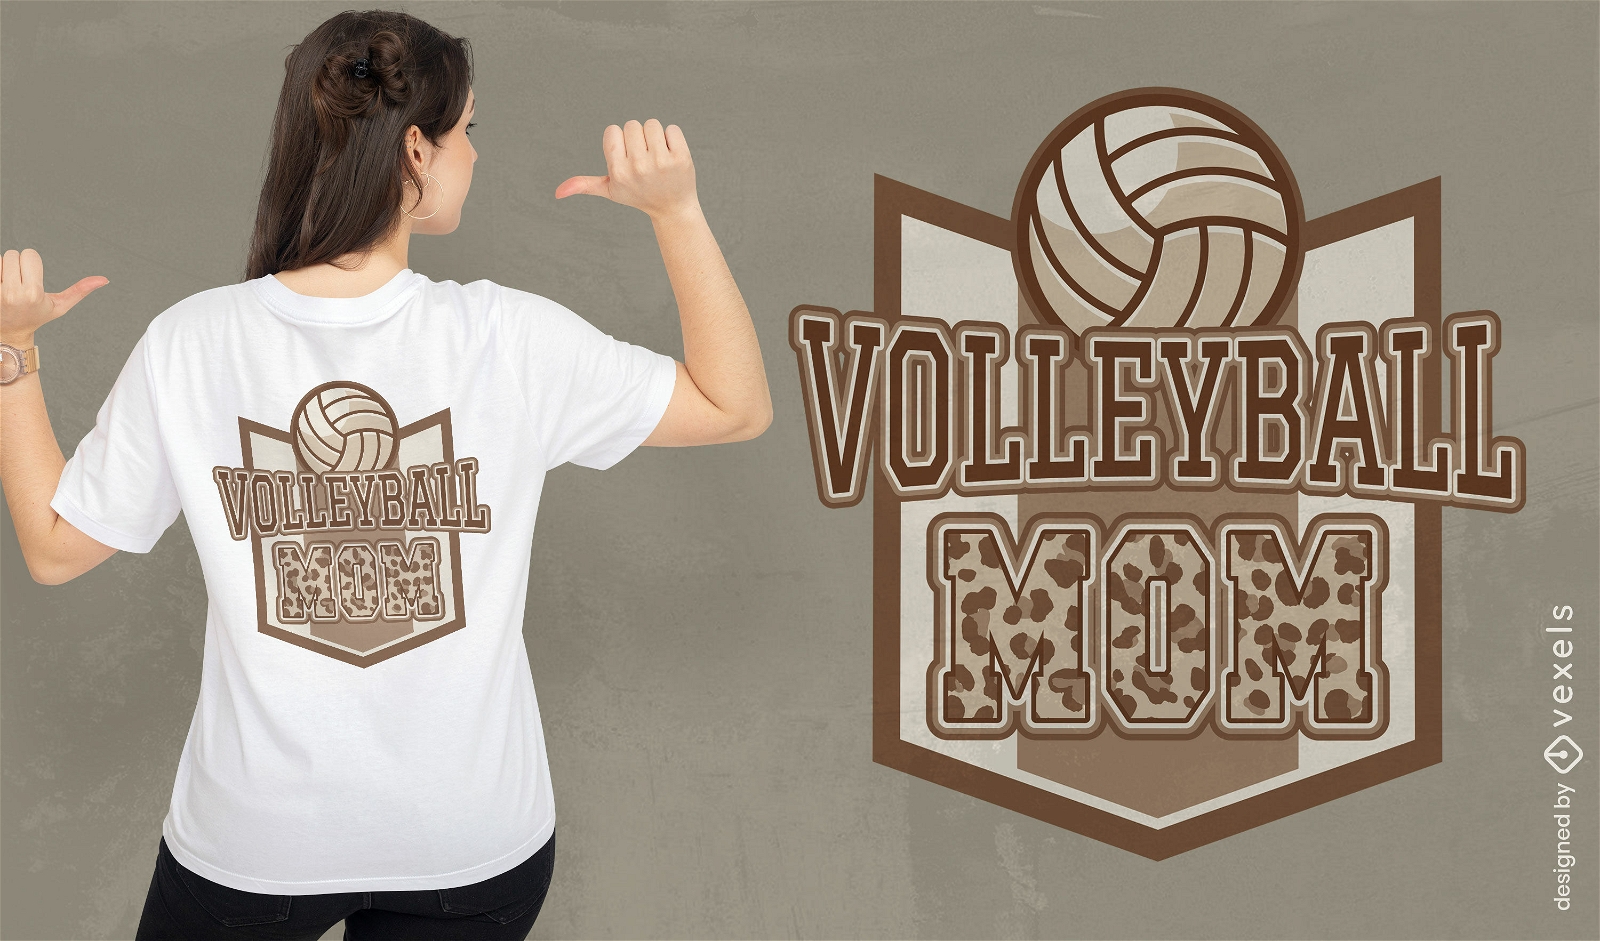 Volleyball-Mutter-T-Shirt-Design mit Animal-Print